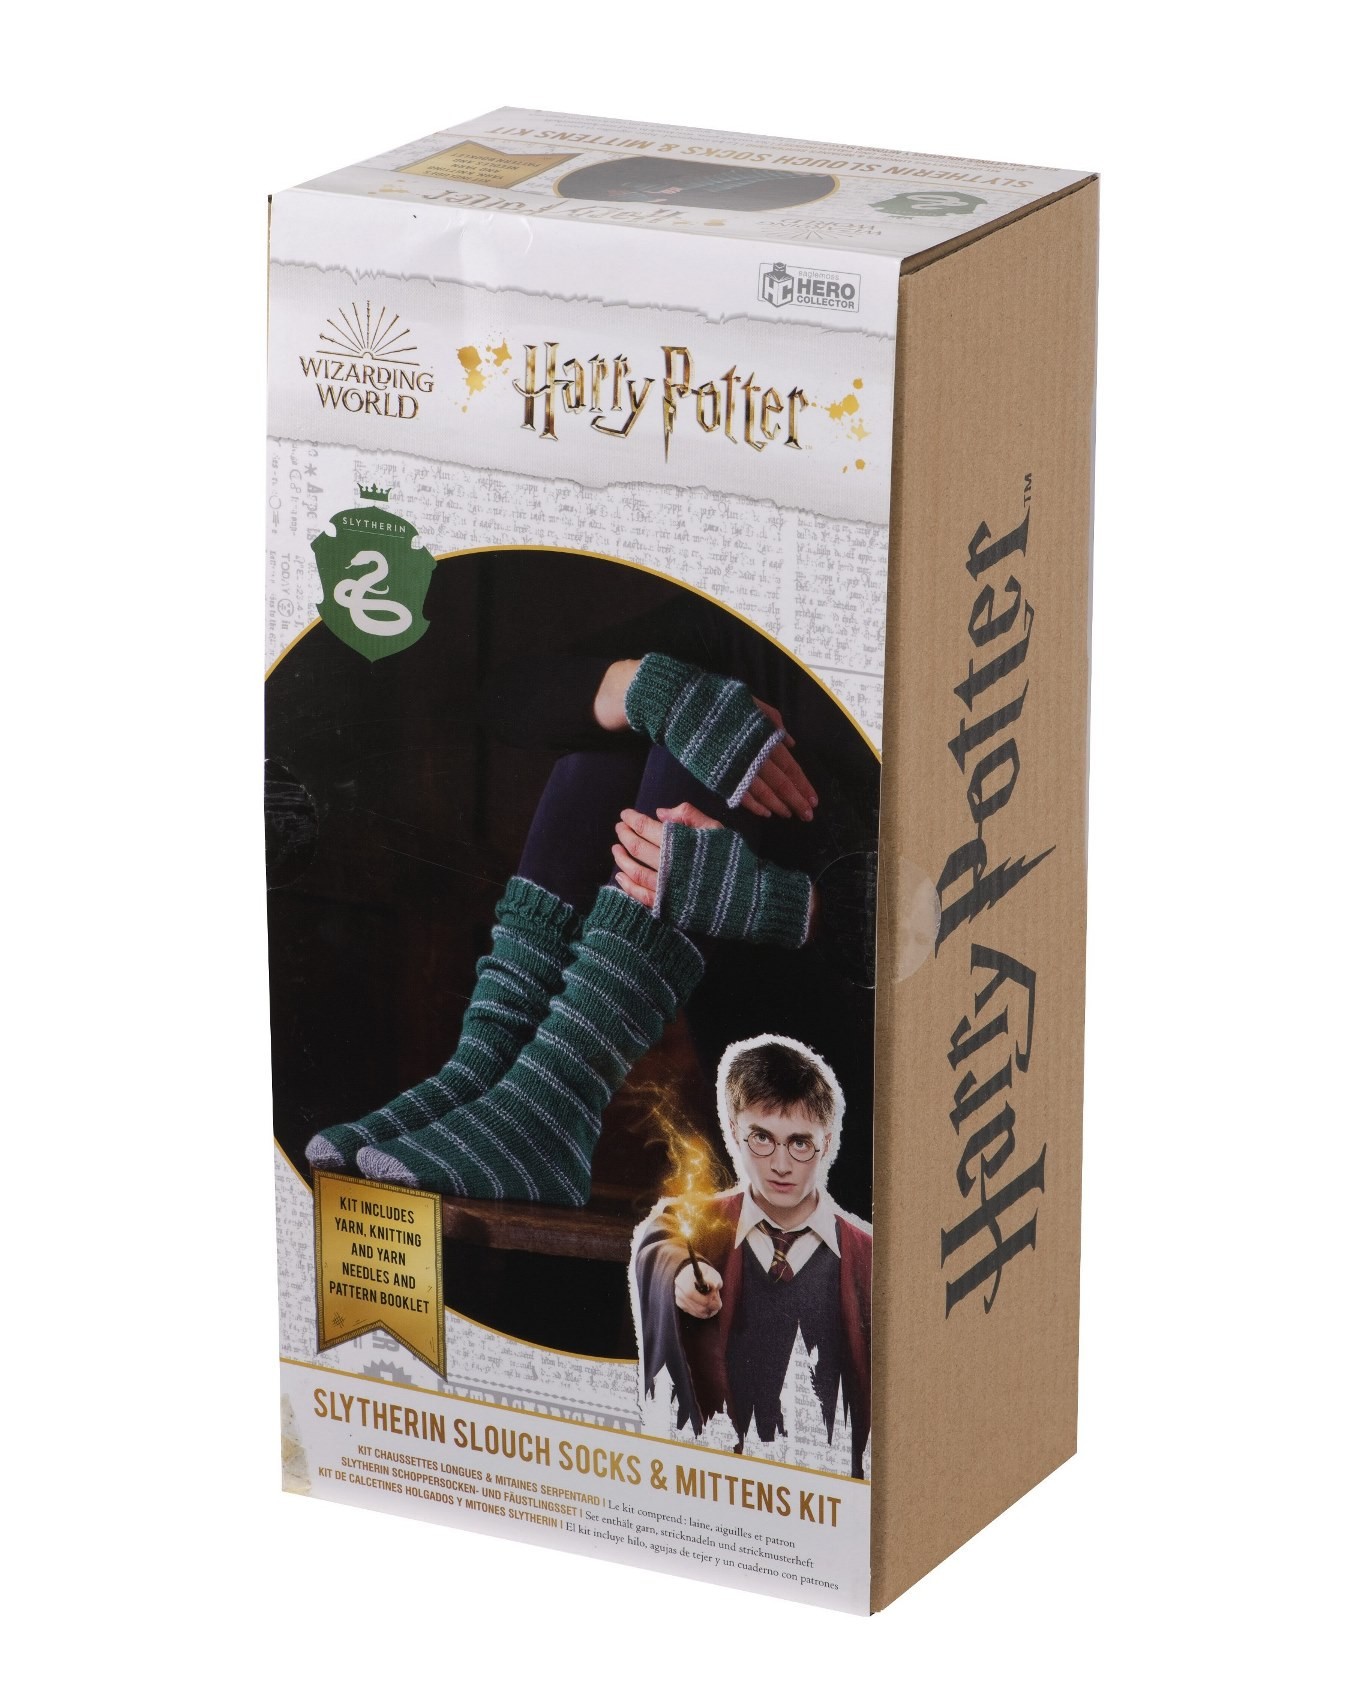  Eaglemoss Publications Ltd. Harry Potter: Kit tricot chaussettes et m